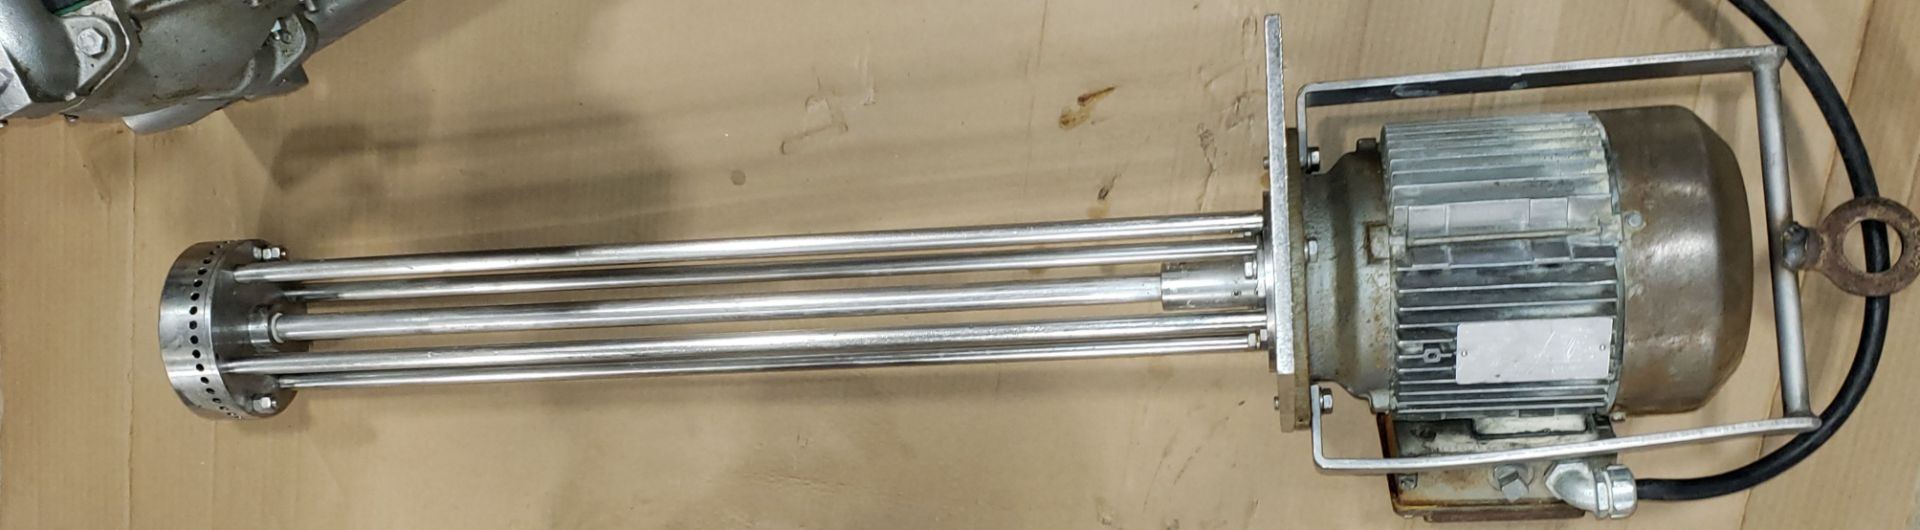 Stainless Steel Homogenizer - Batch Type 30" Shaft on 230/460V